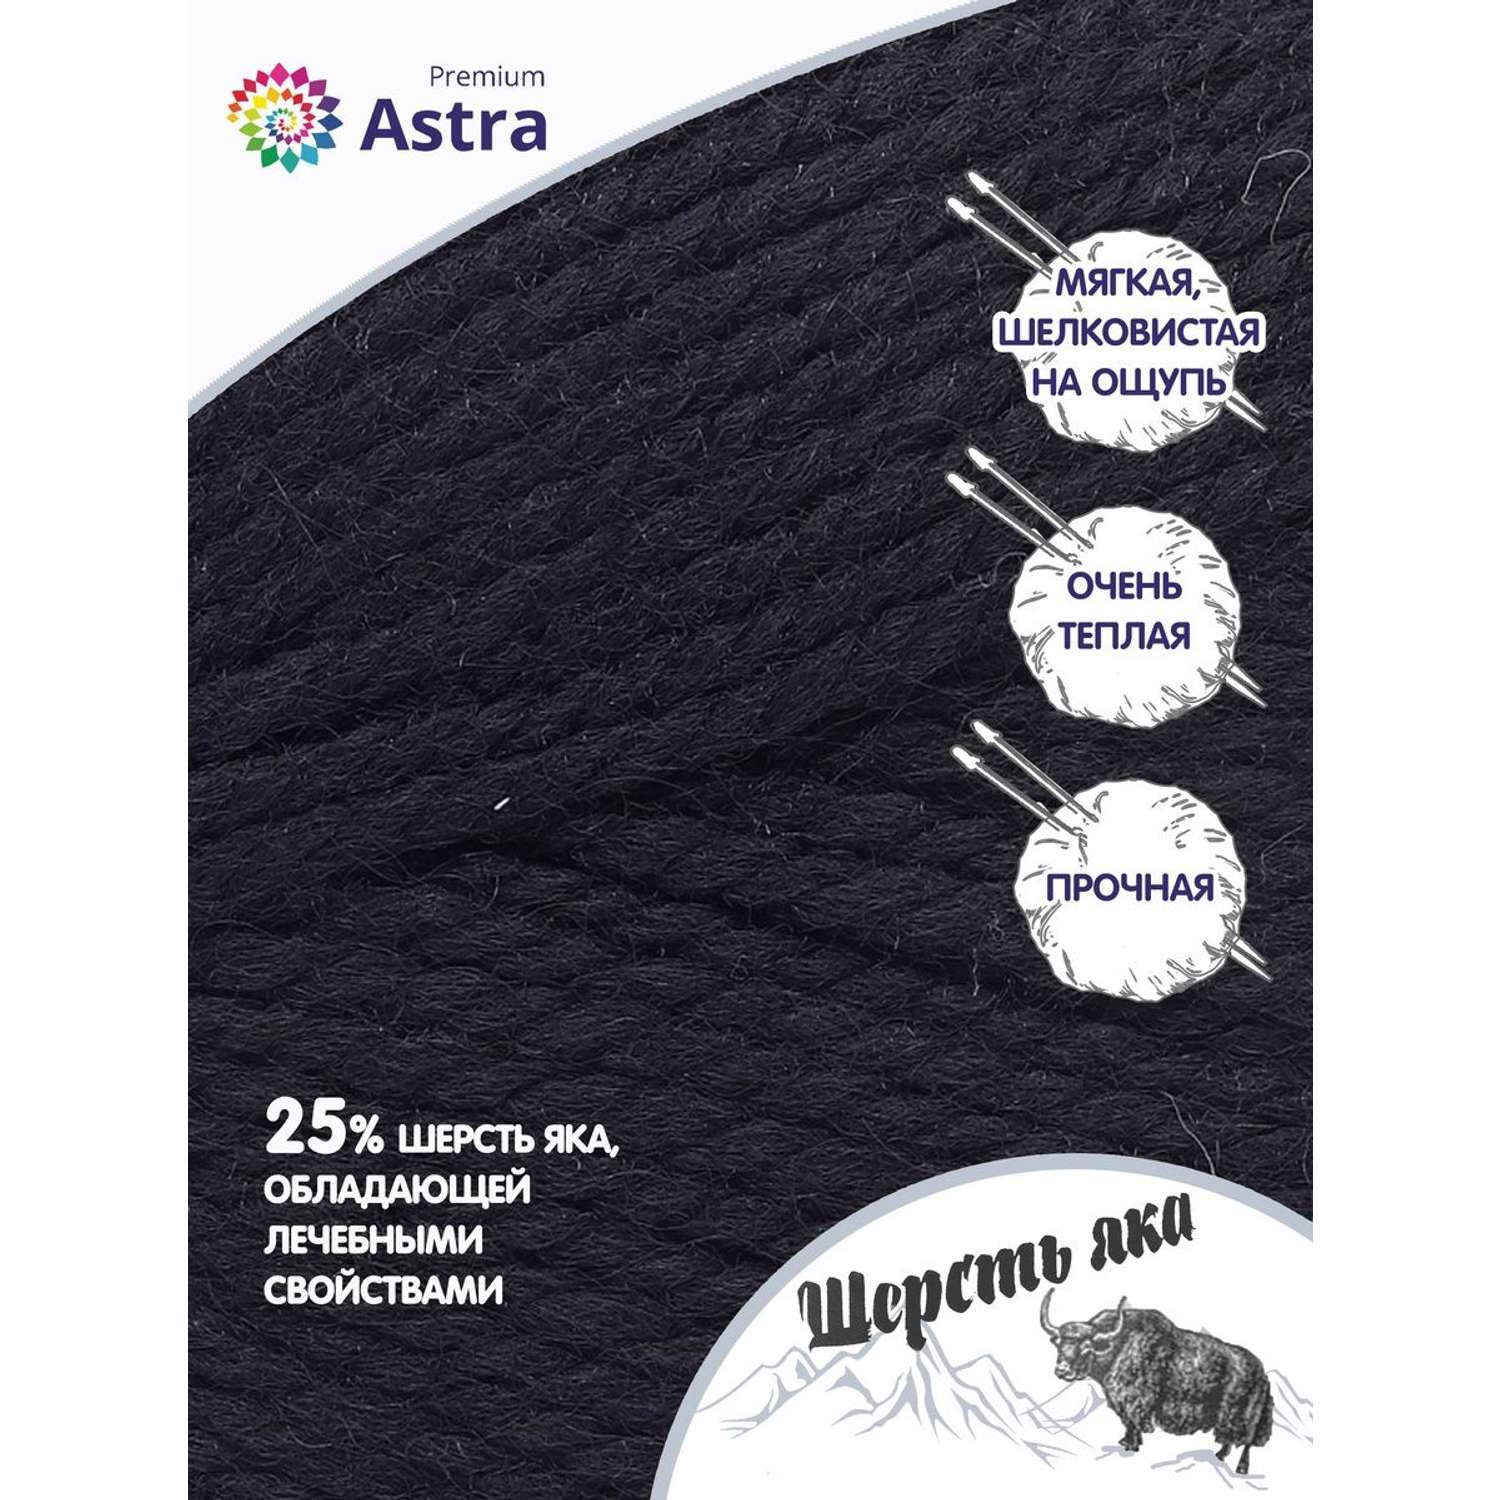 Пряжа Astra Premium Шерсть яка Yak wool теплая мягкая 100 г 120 м 12 черный 2 мотка - фото 2